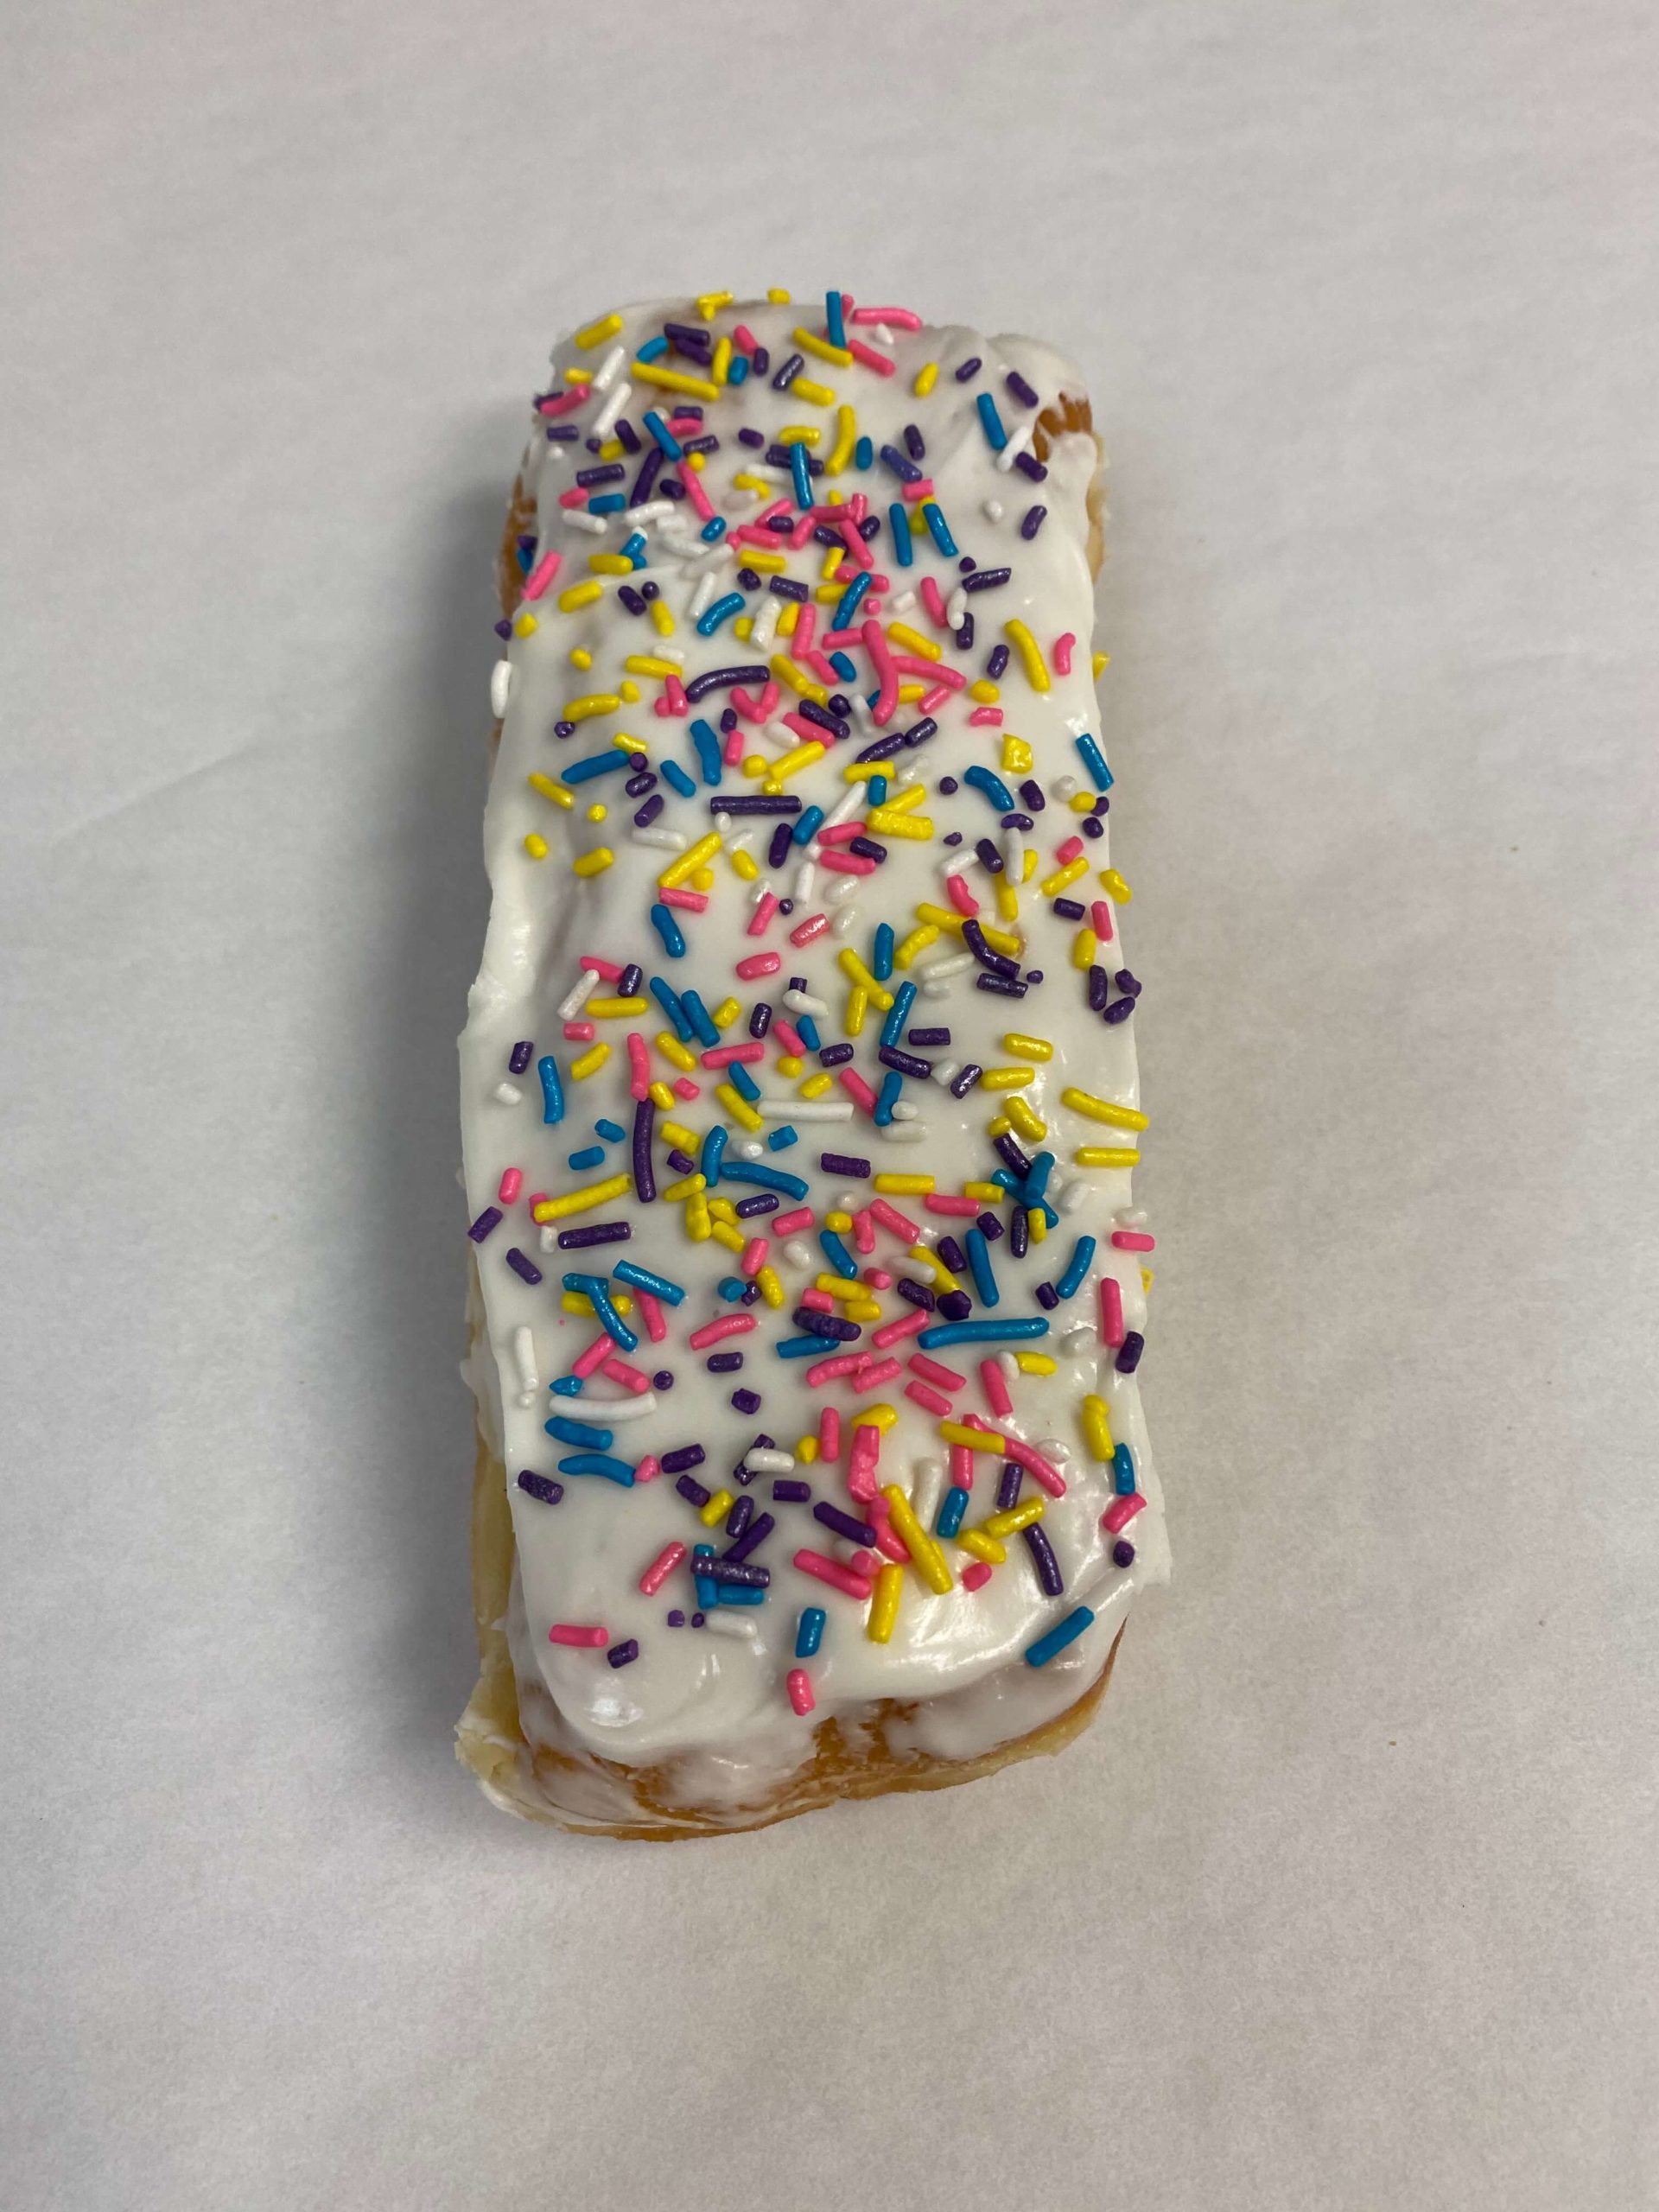 https://farmingtonbakery.net/wp-content/uploads/2020/04/White-Iced-Long-John-with-Sprinkles-Donut-1-scaled.jpg